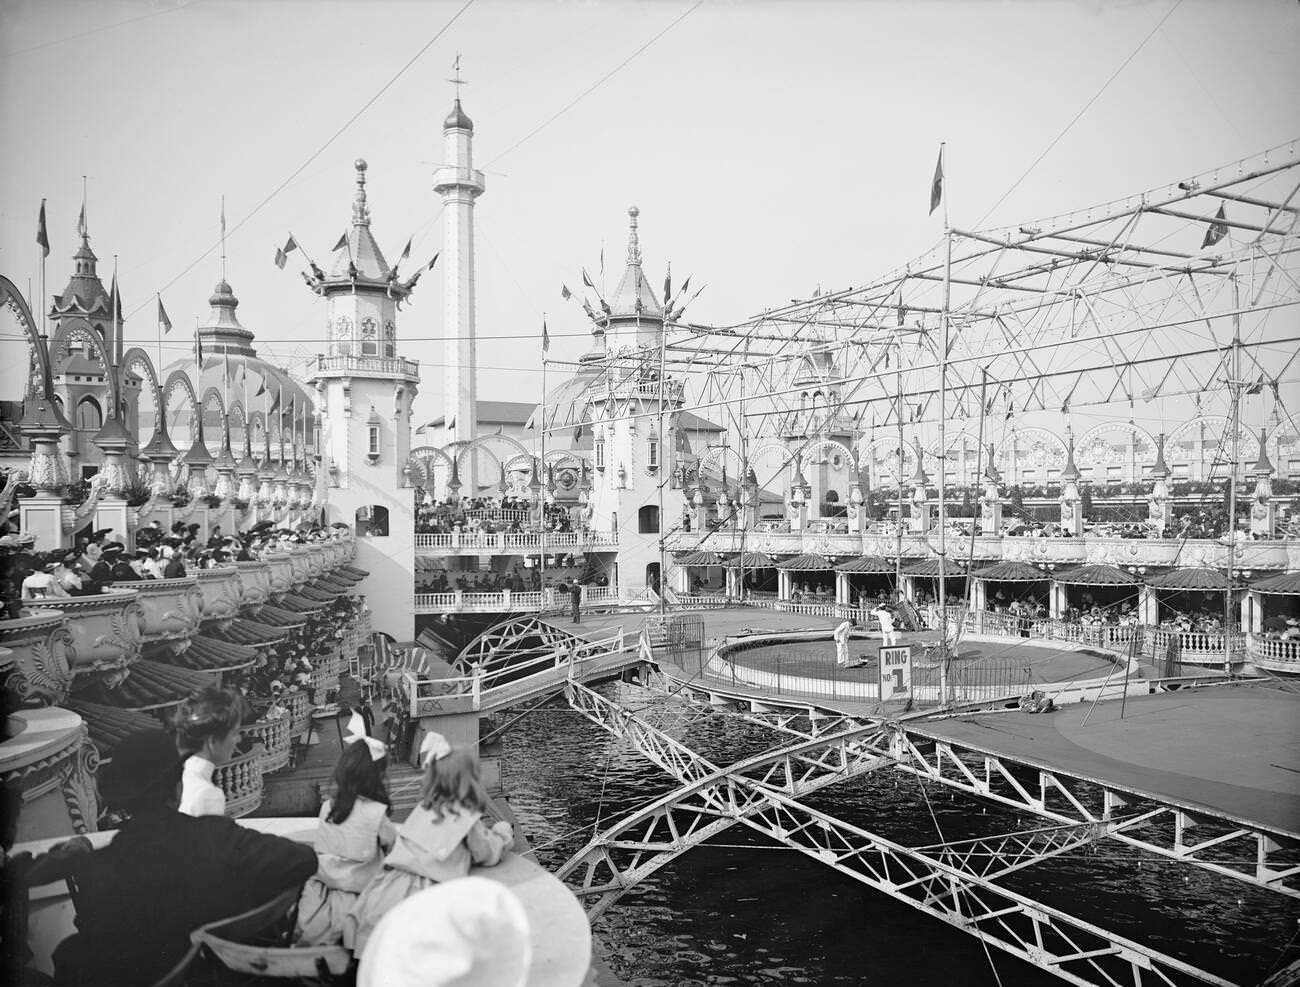 Luna Park At Coney Island, Brooklyn, 1905